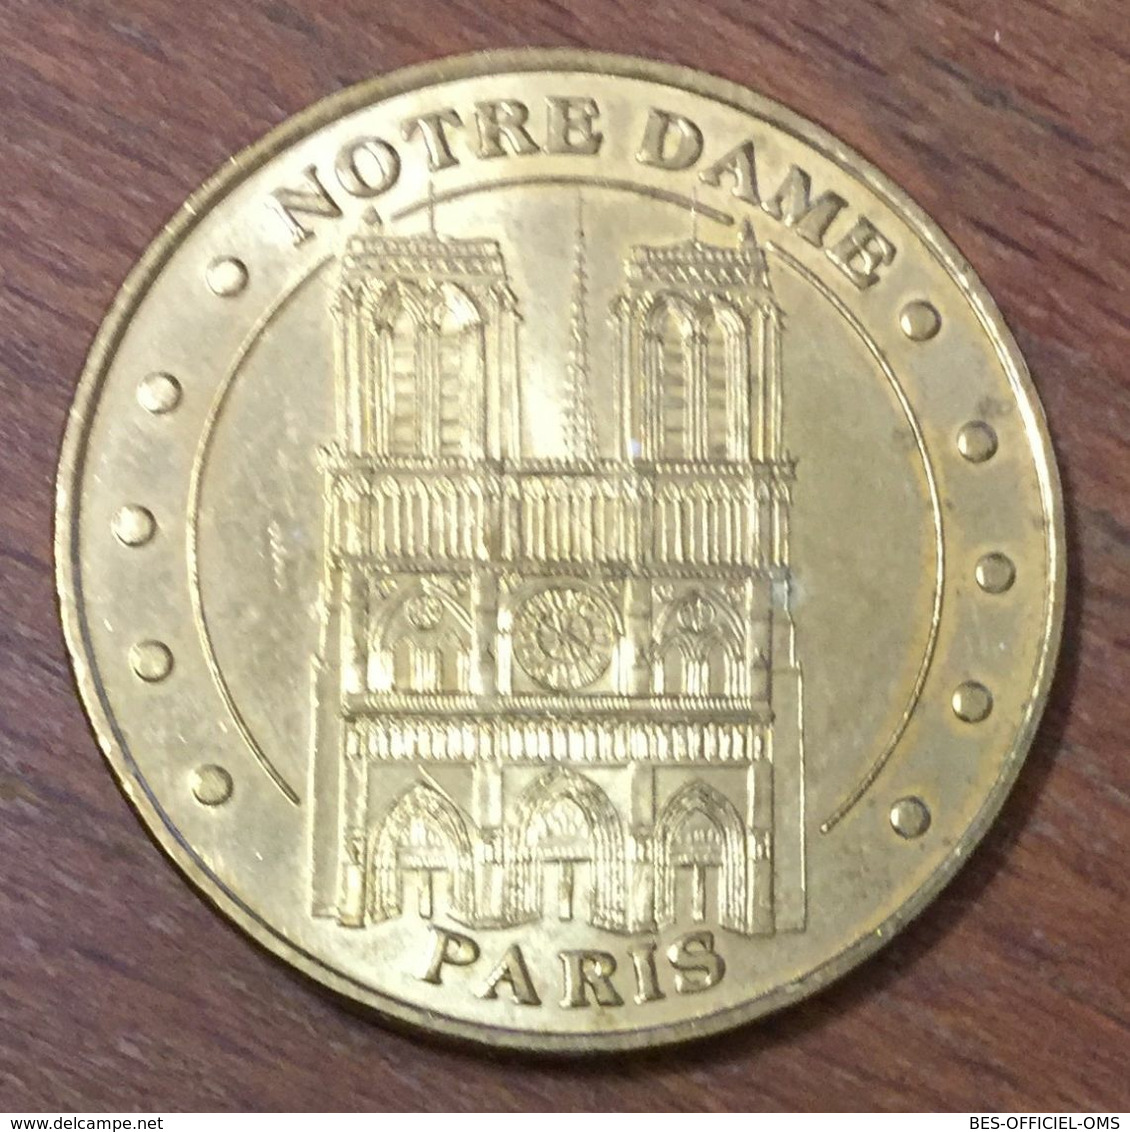 75001 NOTRE DAME DE PARIS MDP 2006 MÉDAILLE SOUVENIR MONNAIE DE PARIS JETON TOURISTIQUE MEDALS TOKENS COINS - 2006